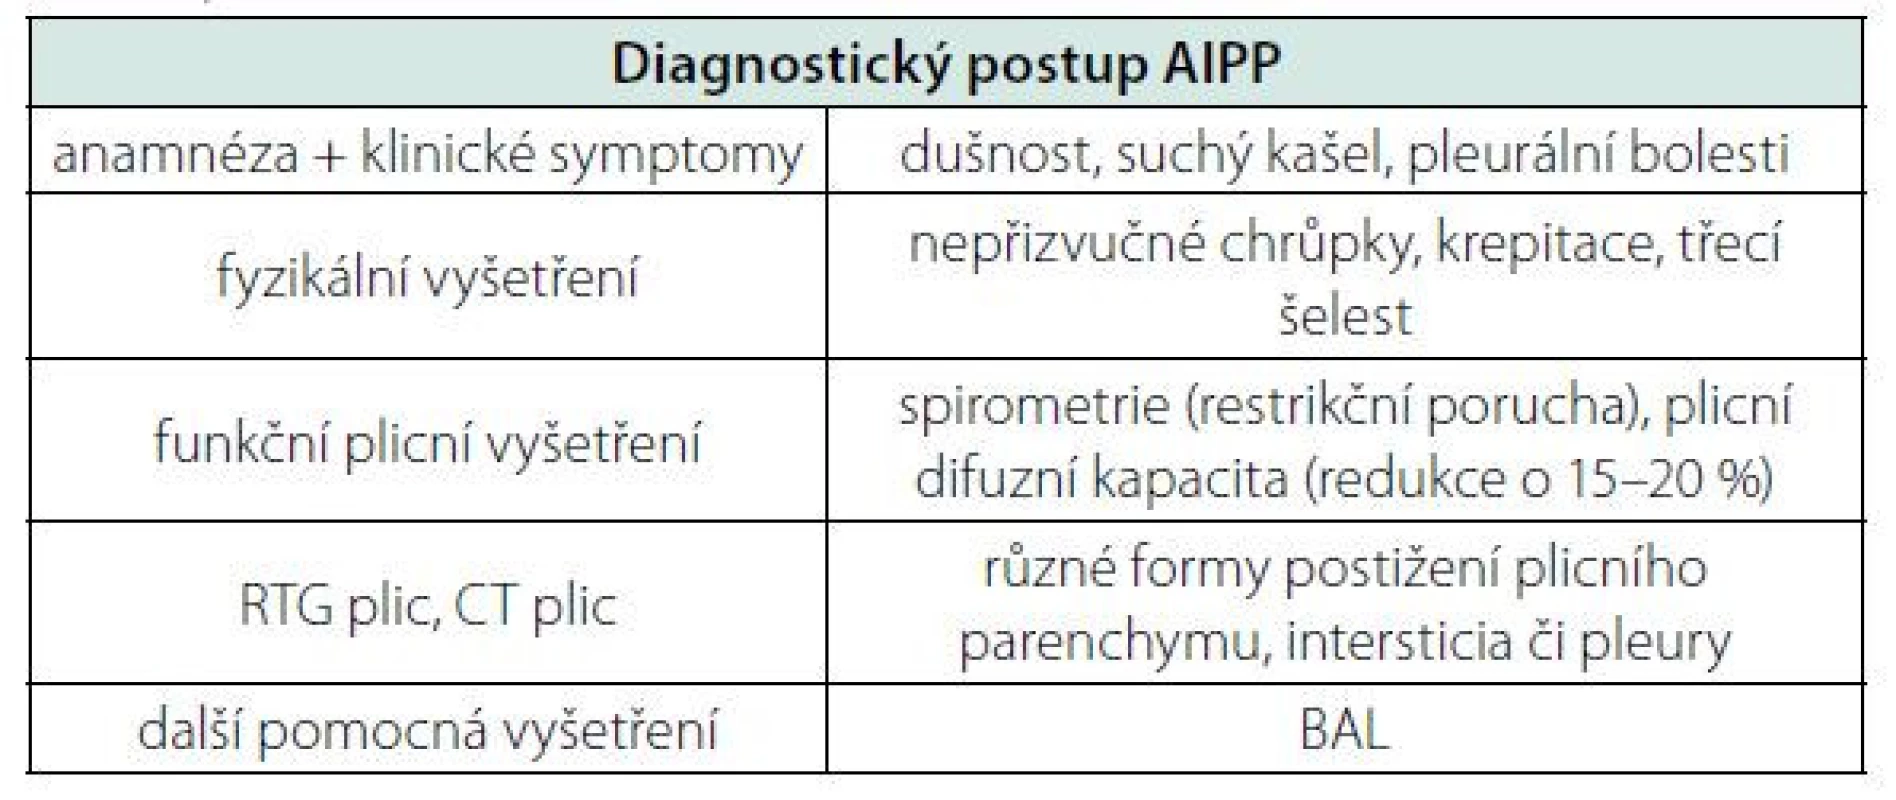 Shrnutí diagnostických postupů AIPP. Důraz je kladen na funkční
plicní vyšetření